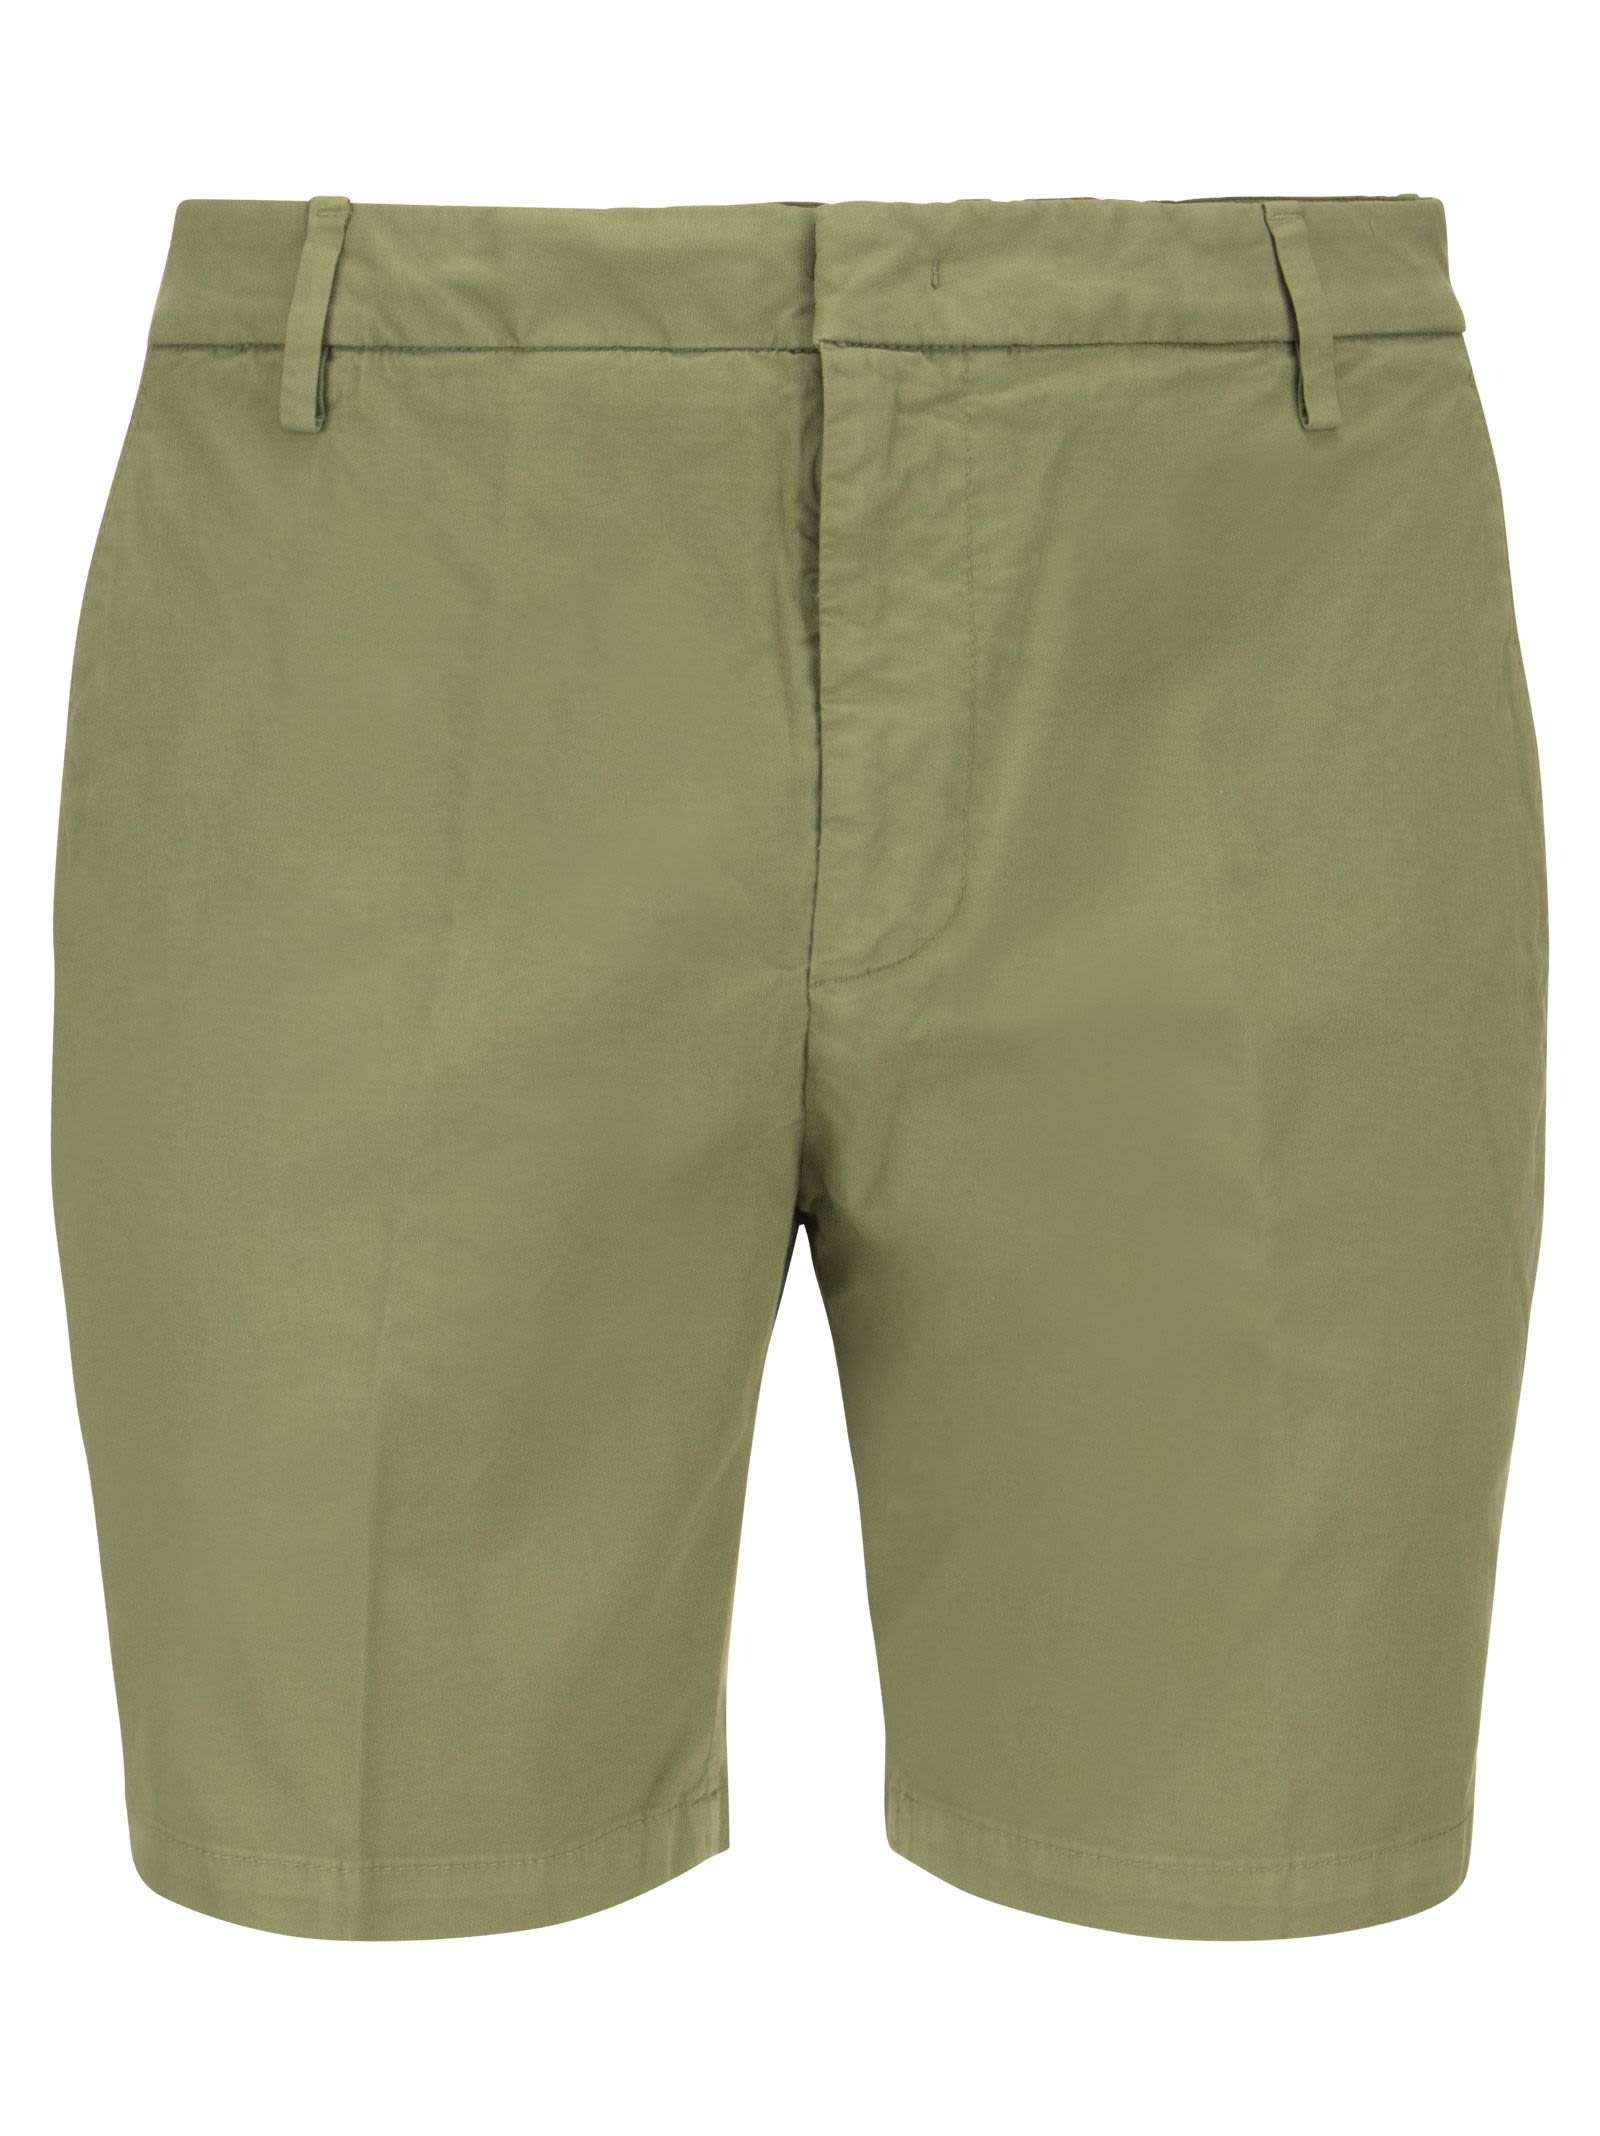 Dondup Manheim - Cotton Blend Shorts